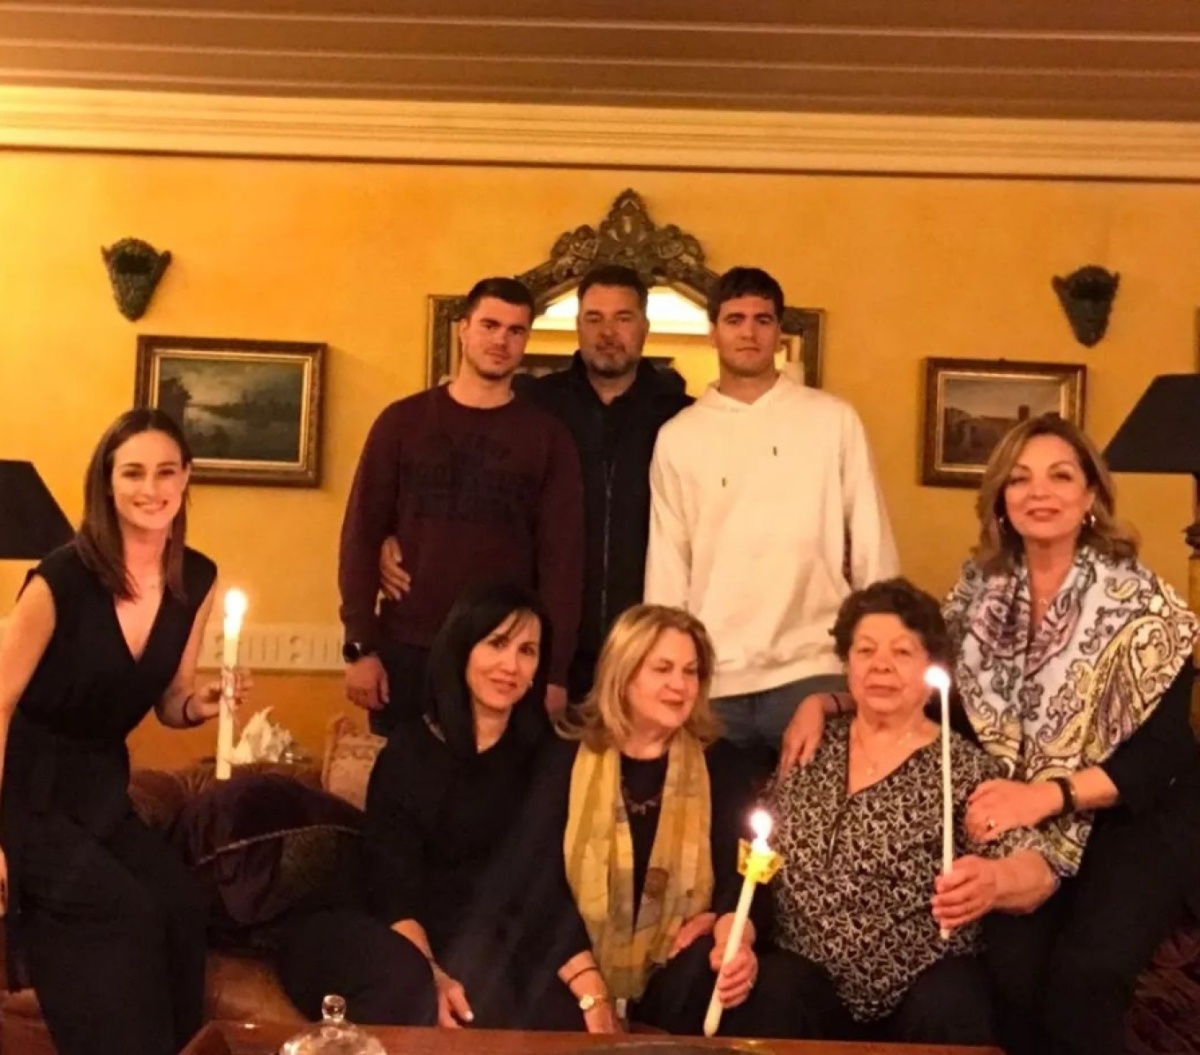 Η Άντζελα Γκερέκου γιορτάζει το Πάσχα στην Κέρκυρα με την κόρη της: Συγκινητικές στιγμές που μοιράζονται στα μέσα κοινωνικής δικτύωσης